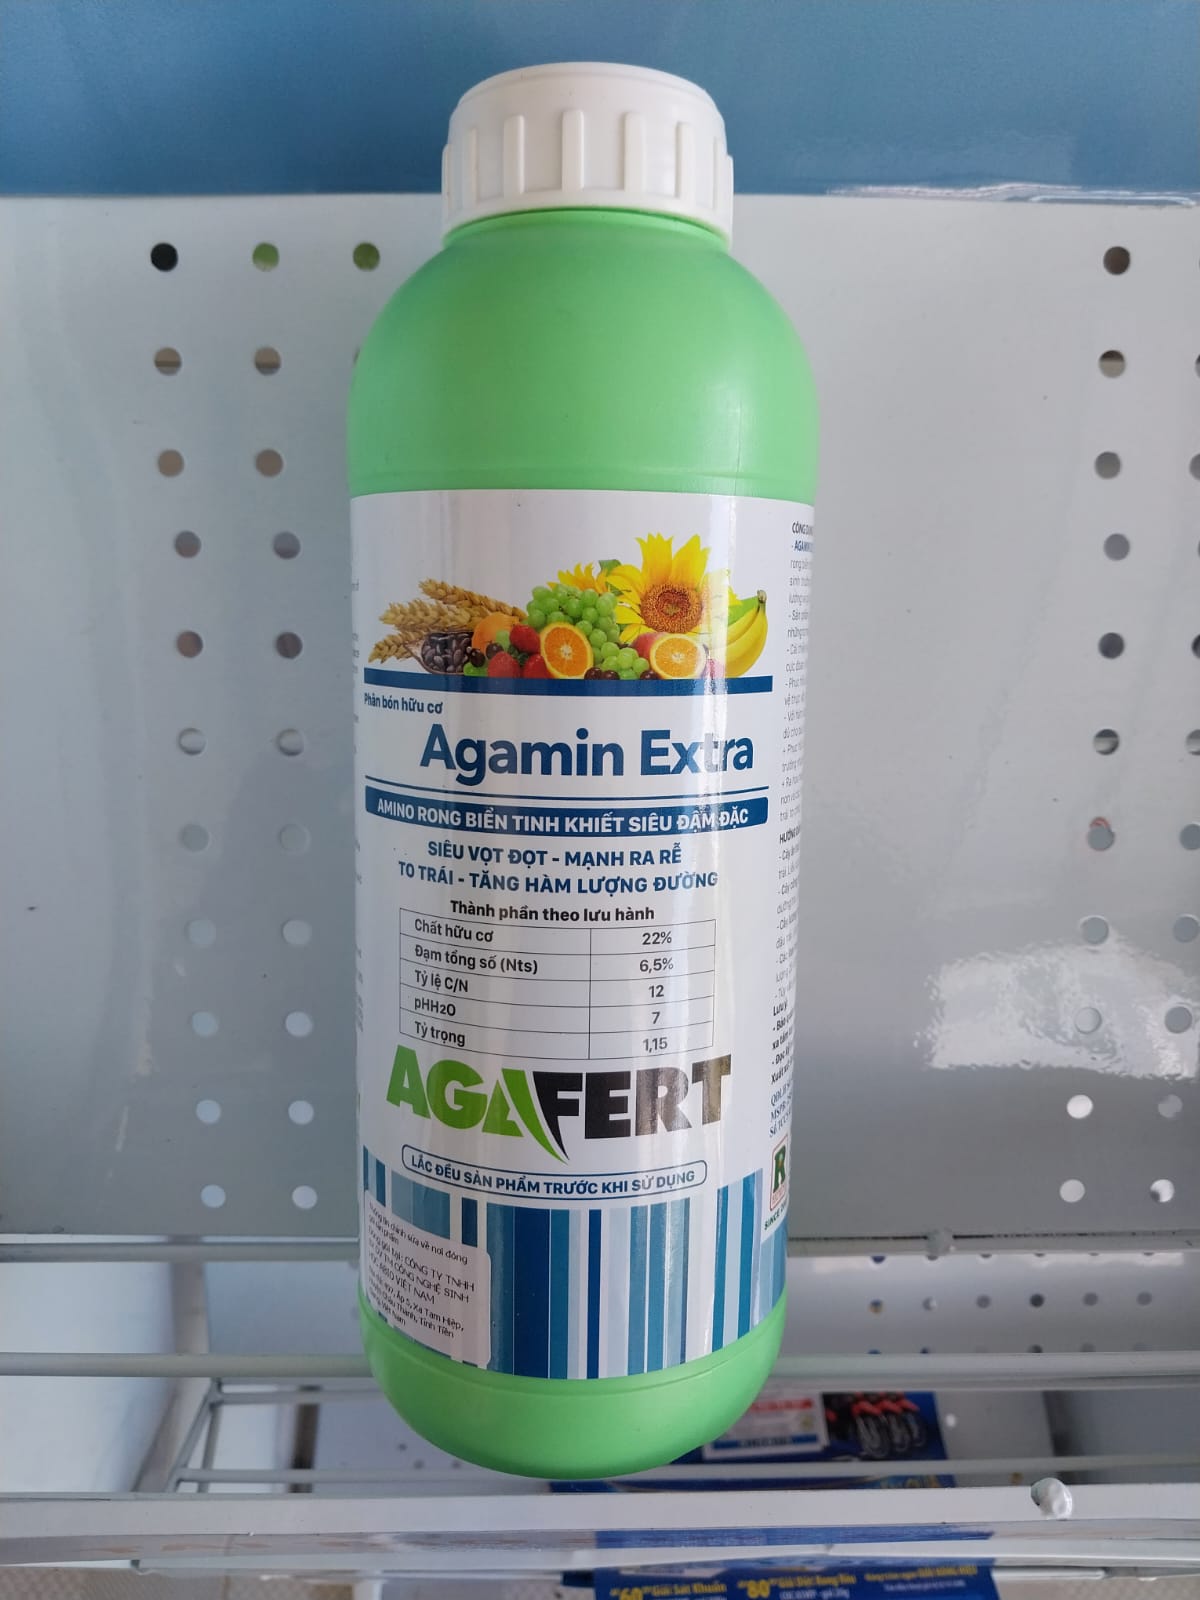 AMINO RONG BIỂN Agamin Extra nhập khẩu Ý chai 1 lít